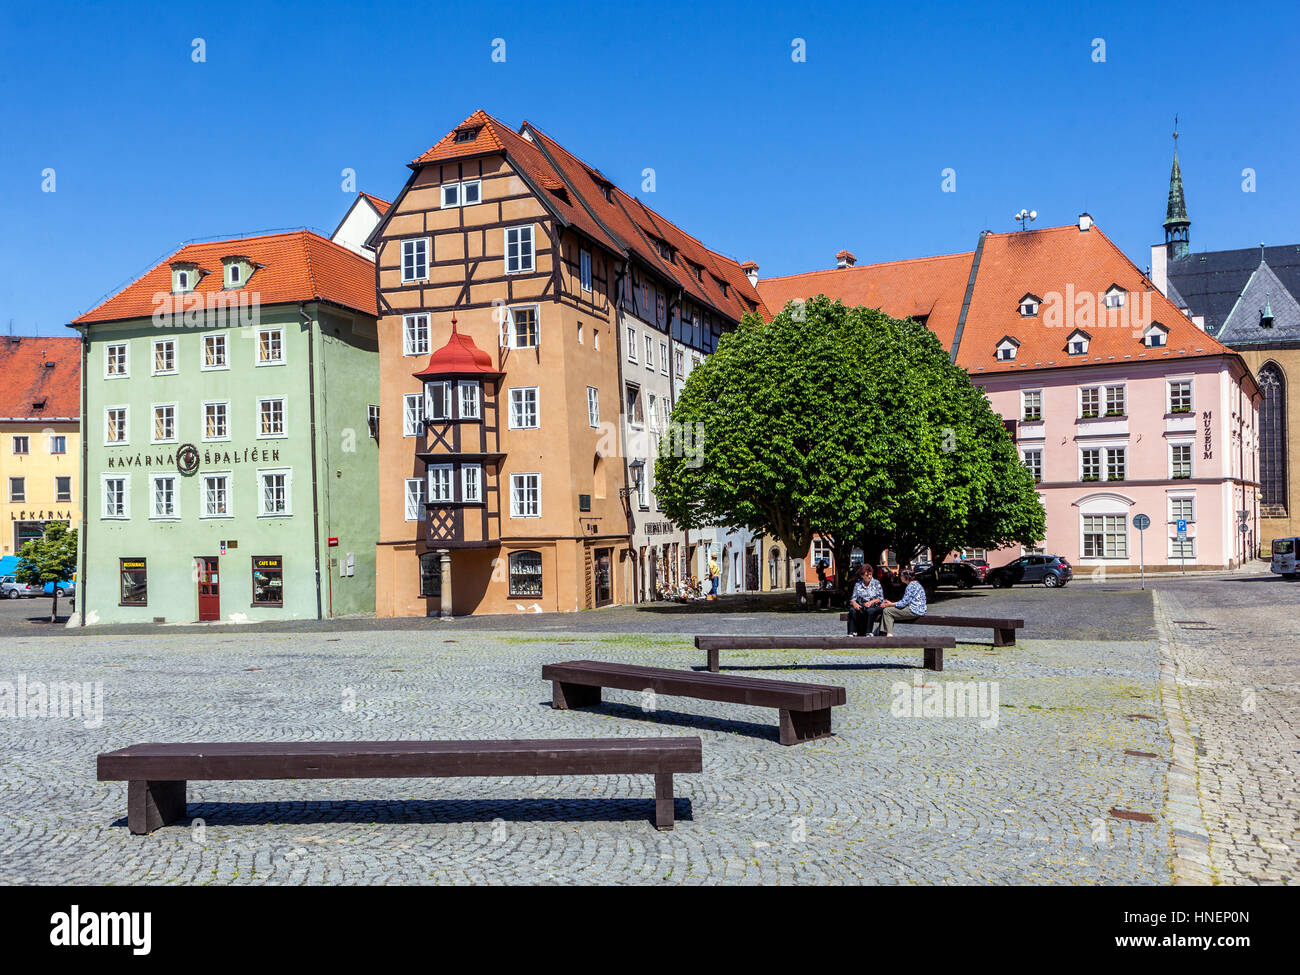 La vieille ville historique Cheb Spalicek Houses, main Square, Cheb, Bohême occidentale, République tchèque, Europe Banque D'Images